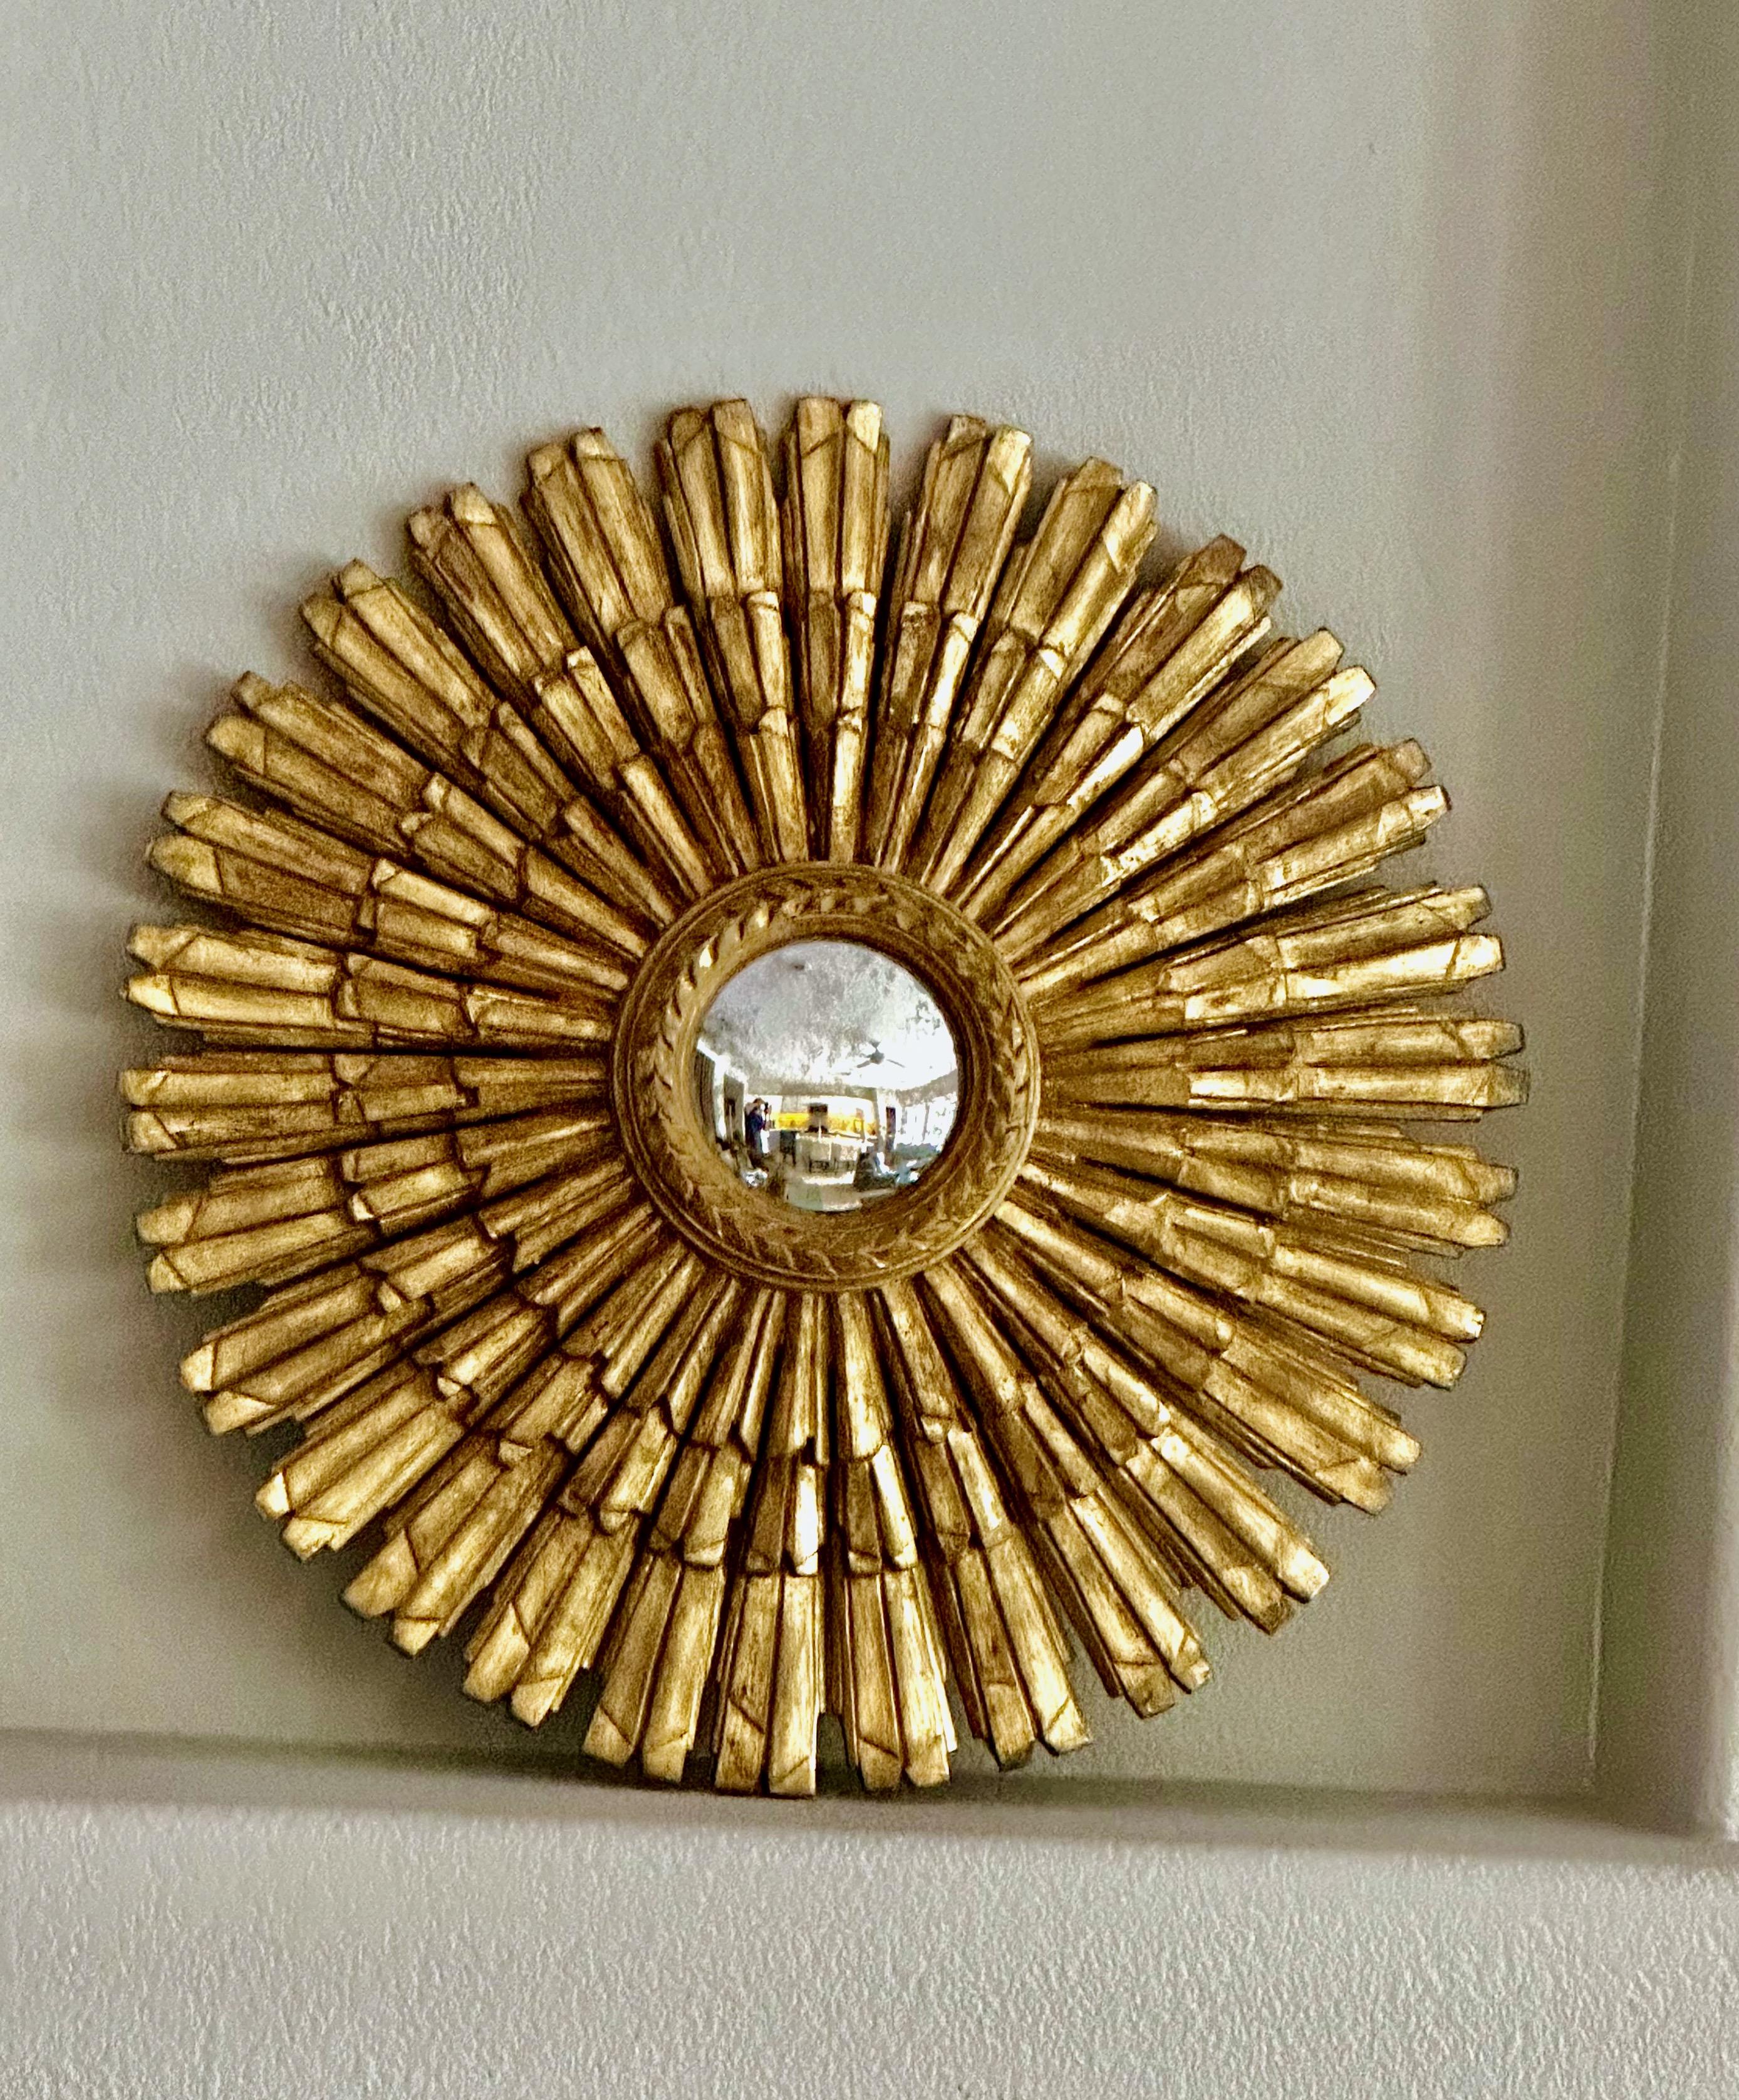 Miroir mural en bois doré sculpté en forme de soleil ou d'étoile avec miroir convexe vieilli inséré, réalisé par Palladio en Italie. Diamètre du miroir 5.25